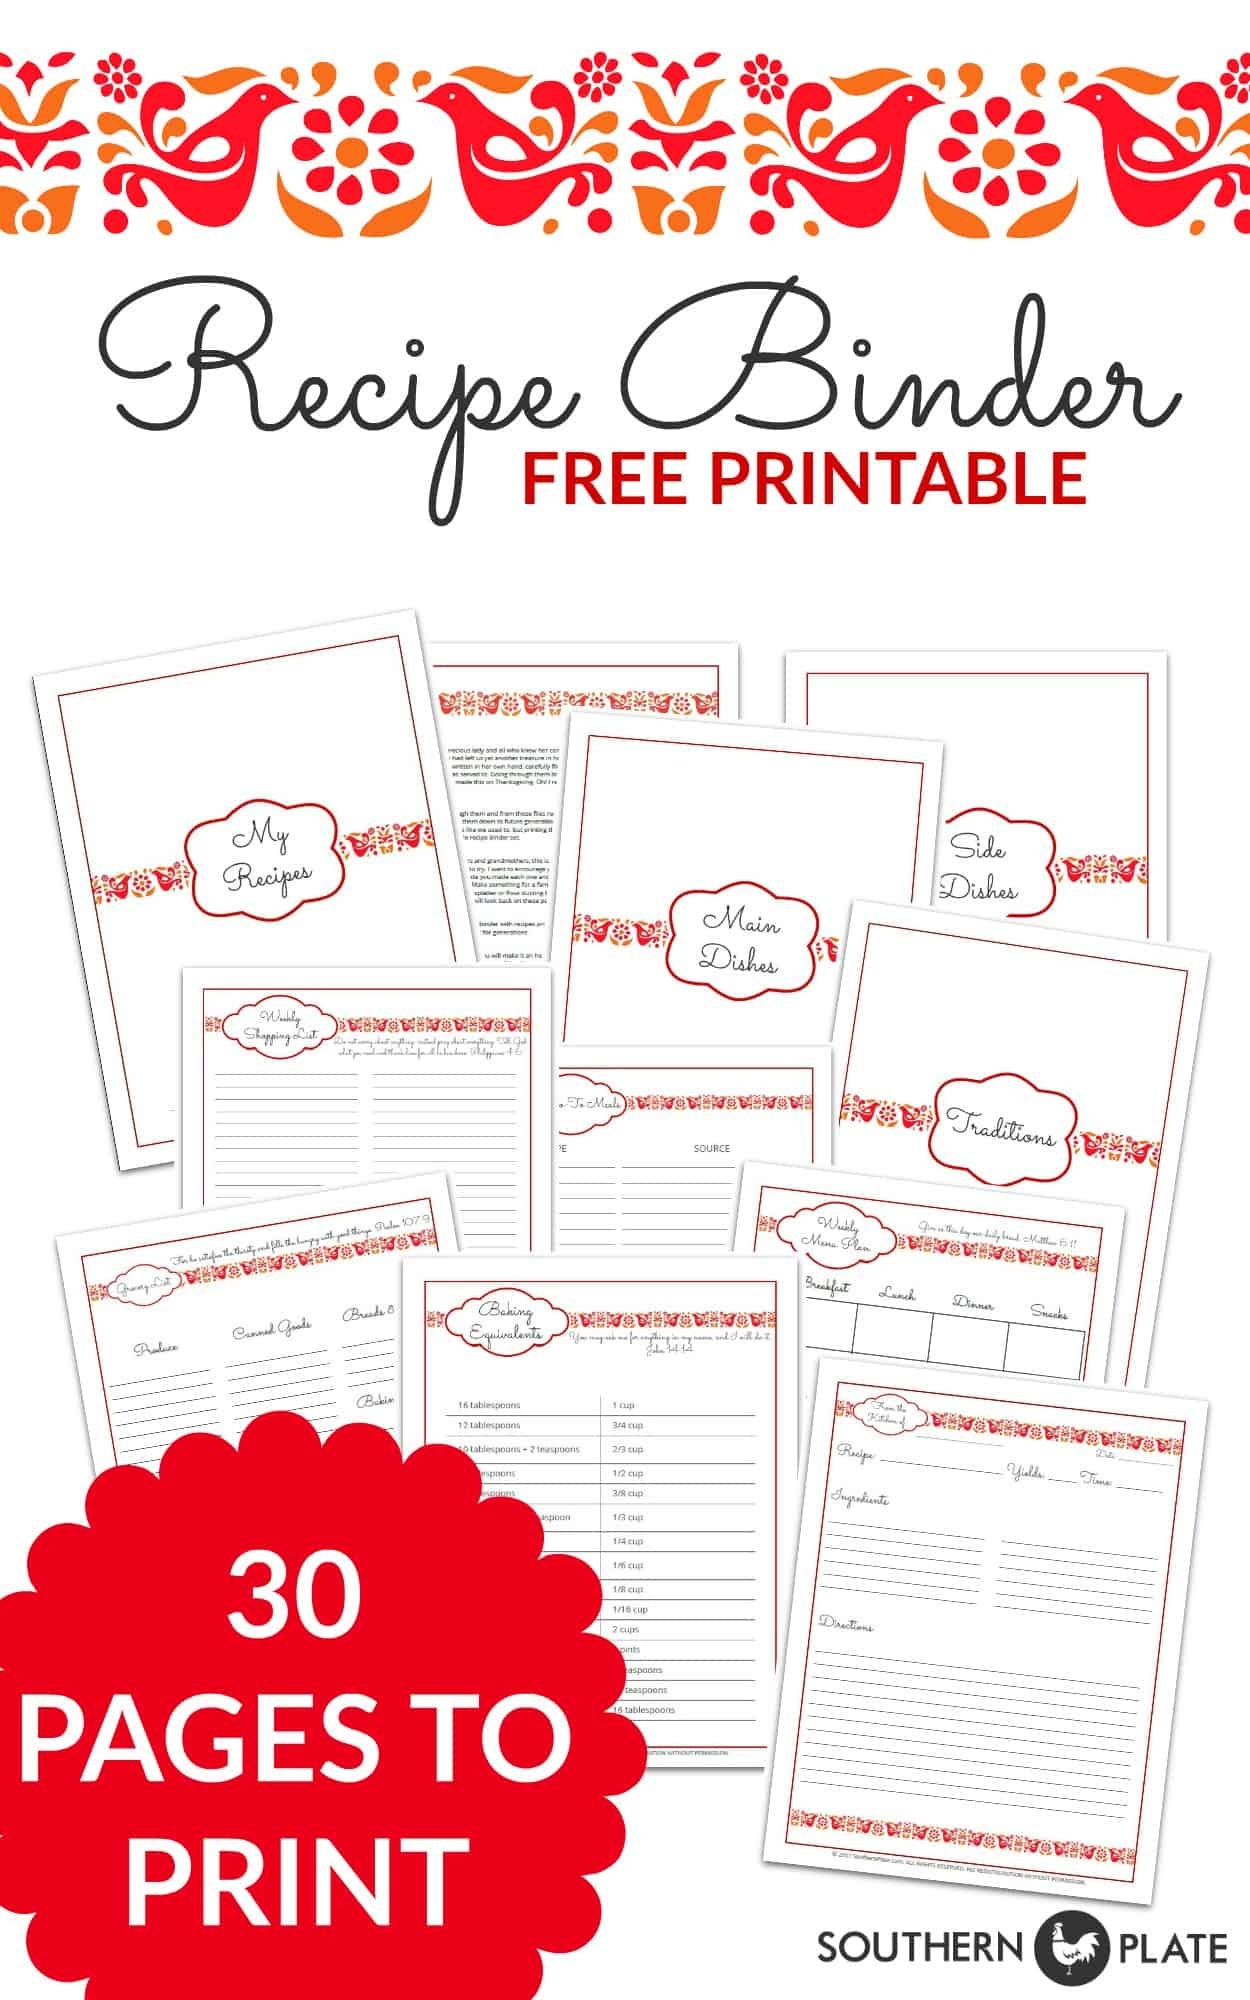 Free Printable Recipe Binder Set - Southern Plate - Free Printable Recipe Binder